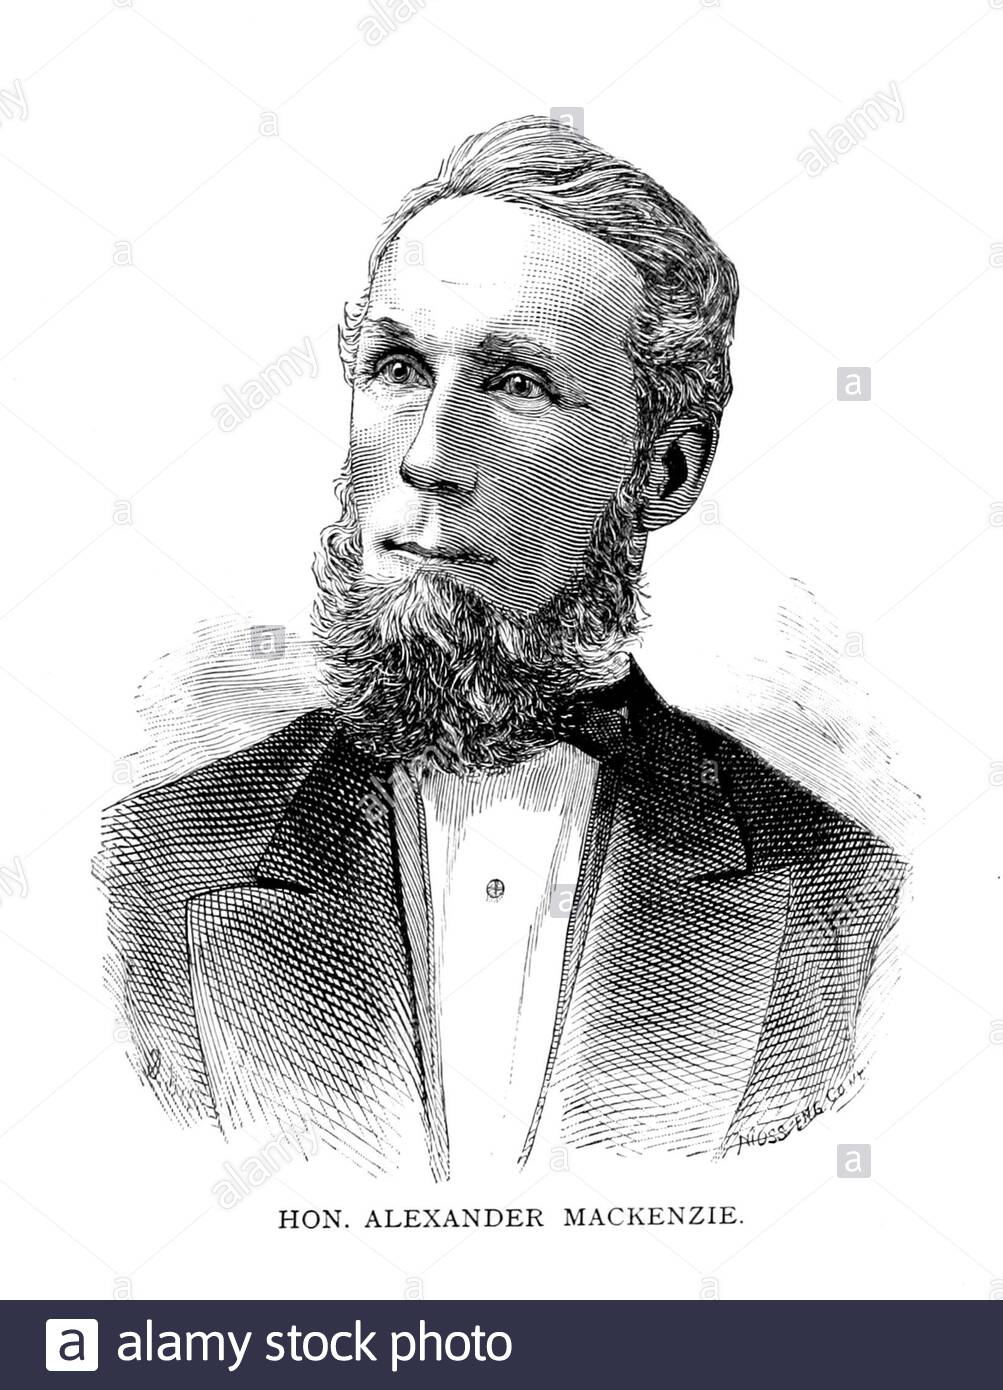 Alexander Mackenzie ritratto, 1822 – 1892, è stato un politico scozzese-canadese che è stato il secondo primo ministro del Canada, in carica dal 1873 al 1878, illustrazione d'epoca dal 1885 Foto Stock